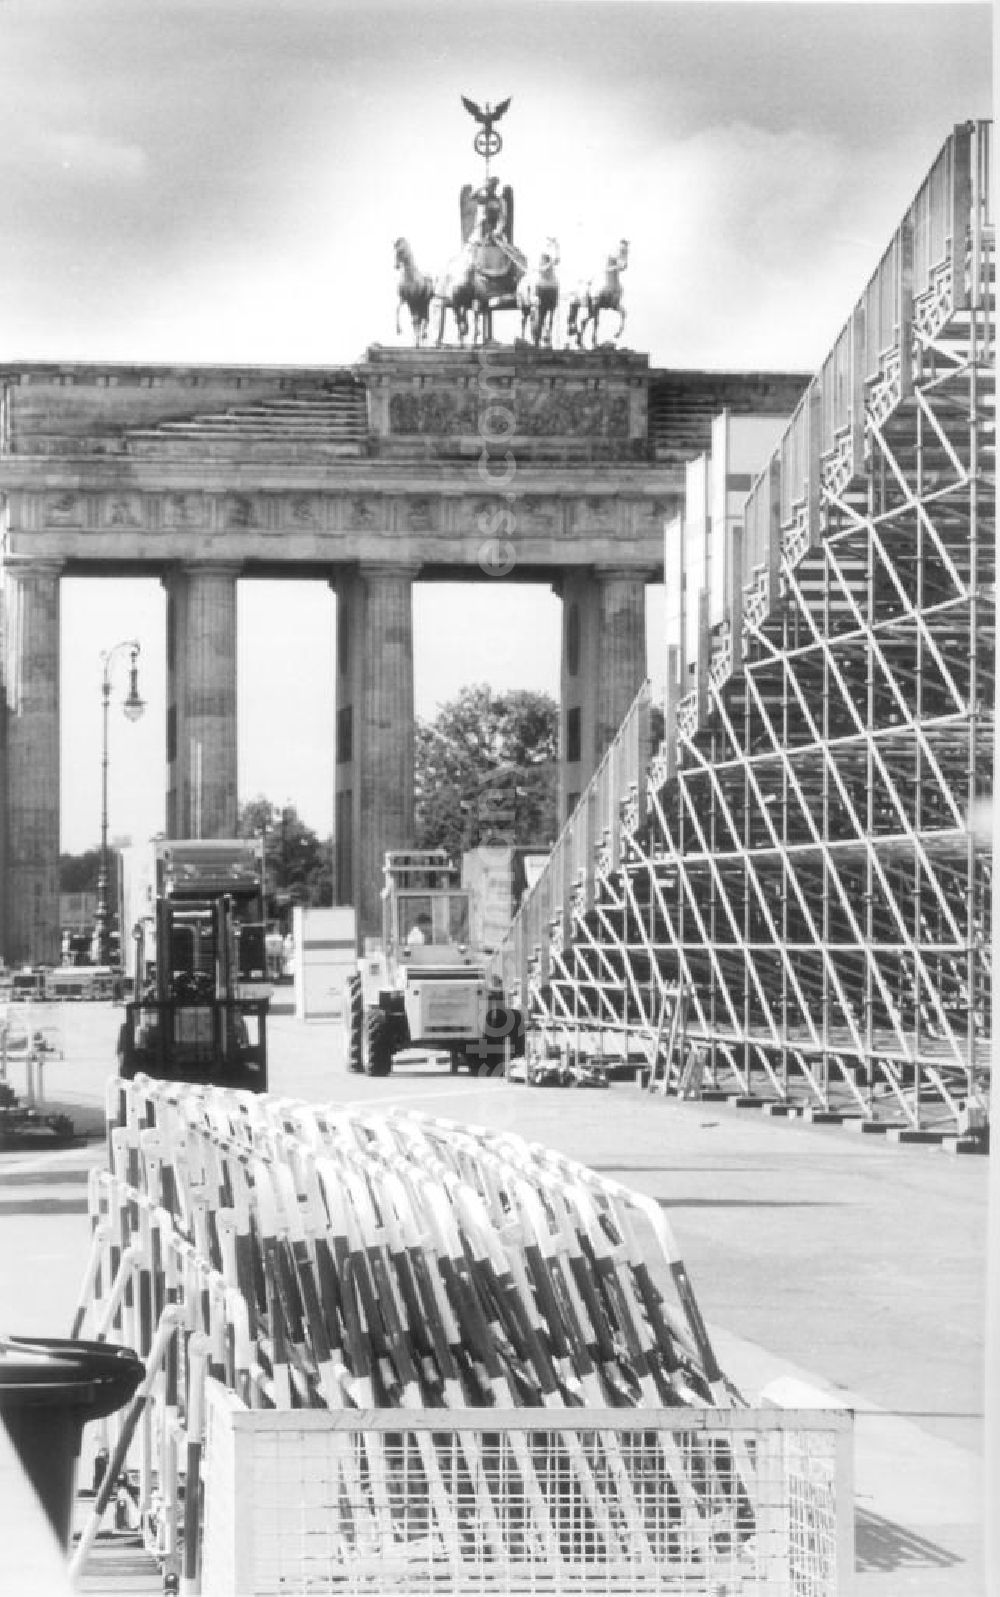 GDR photo archive: Berlin - Absperrung am Brandenburger Tor. Vorbereitung für die feierliche Verabschiedung der West-Alliierten nach der Wiedervereinigung.